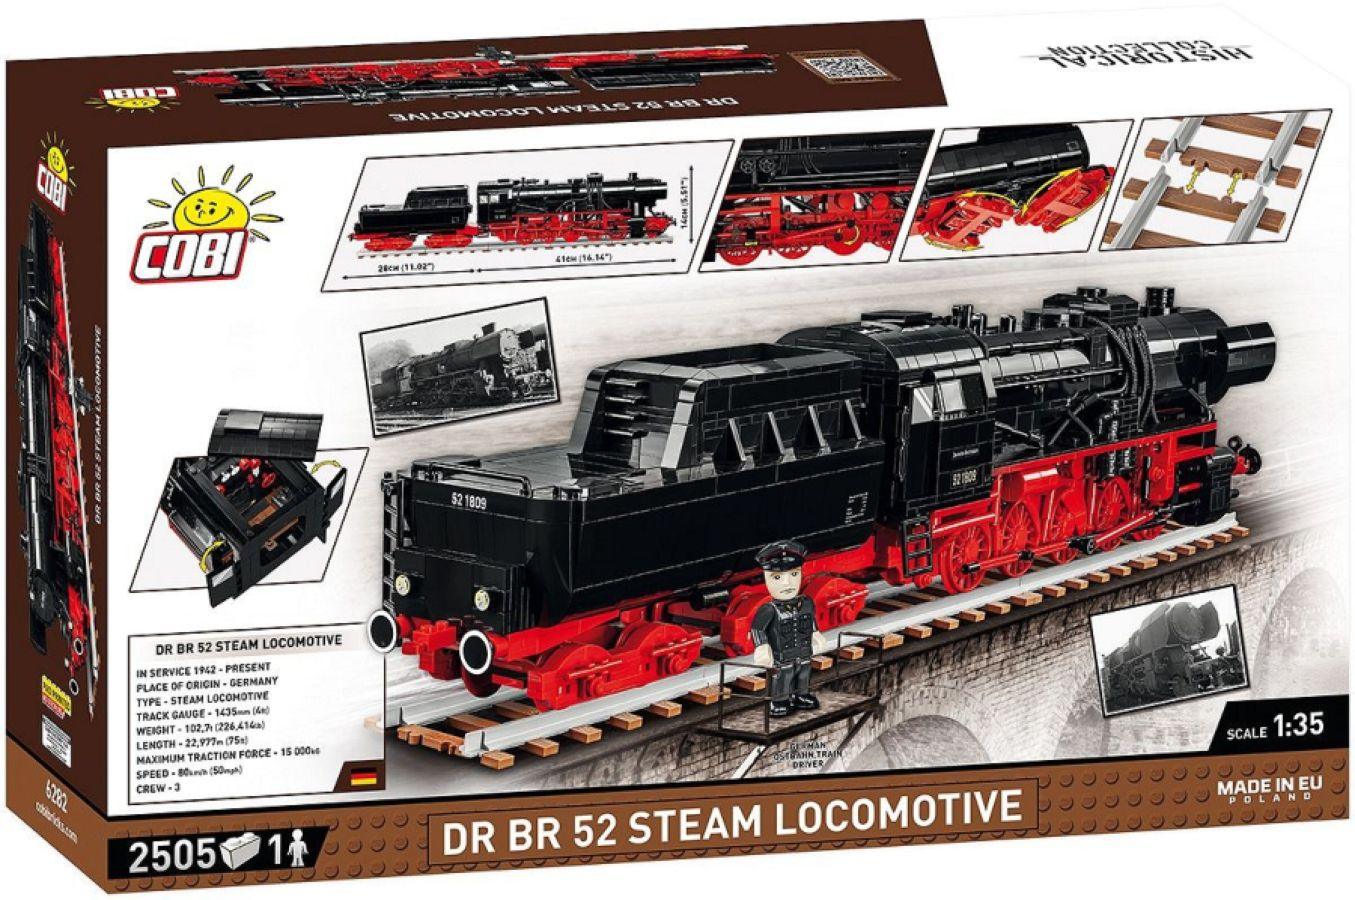 COB6282 Trains - DR BR 52 Steam Locomotive 1:35 Scale [2505 Pcs] - Cobi - Titan Pop Culture